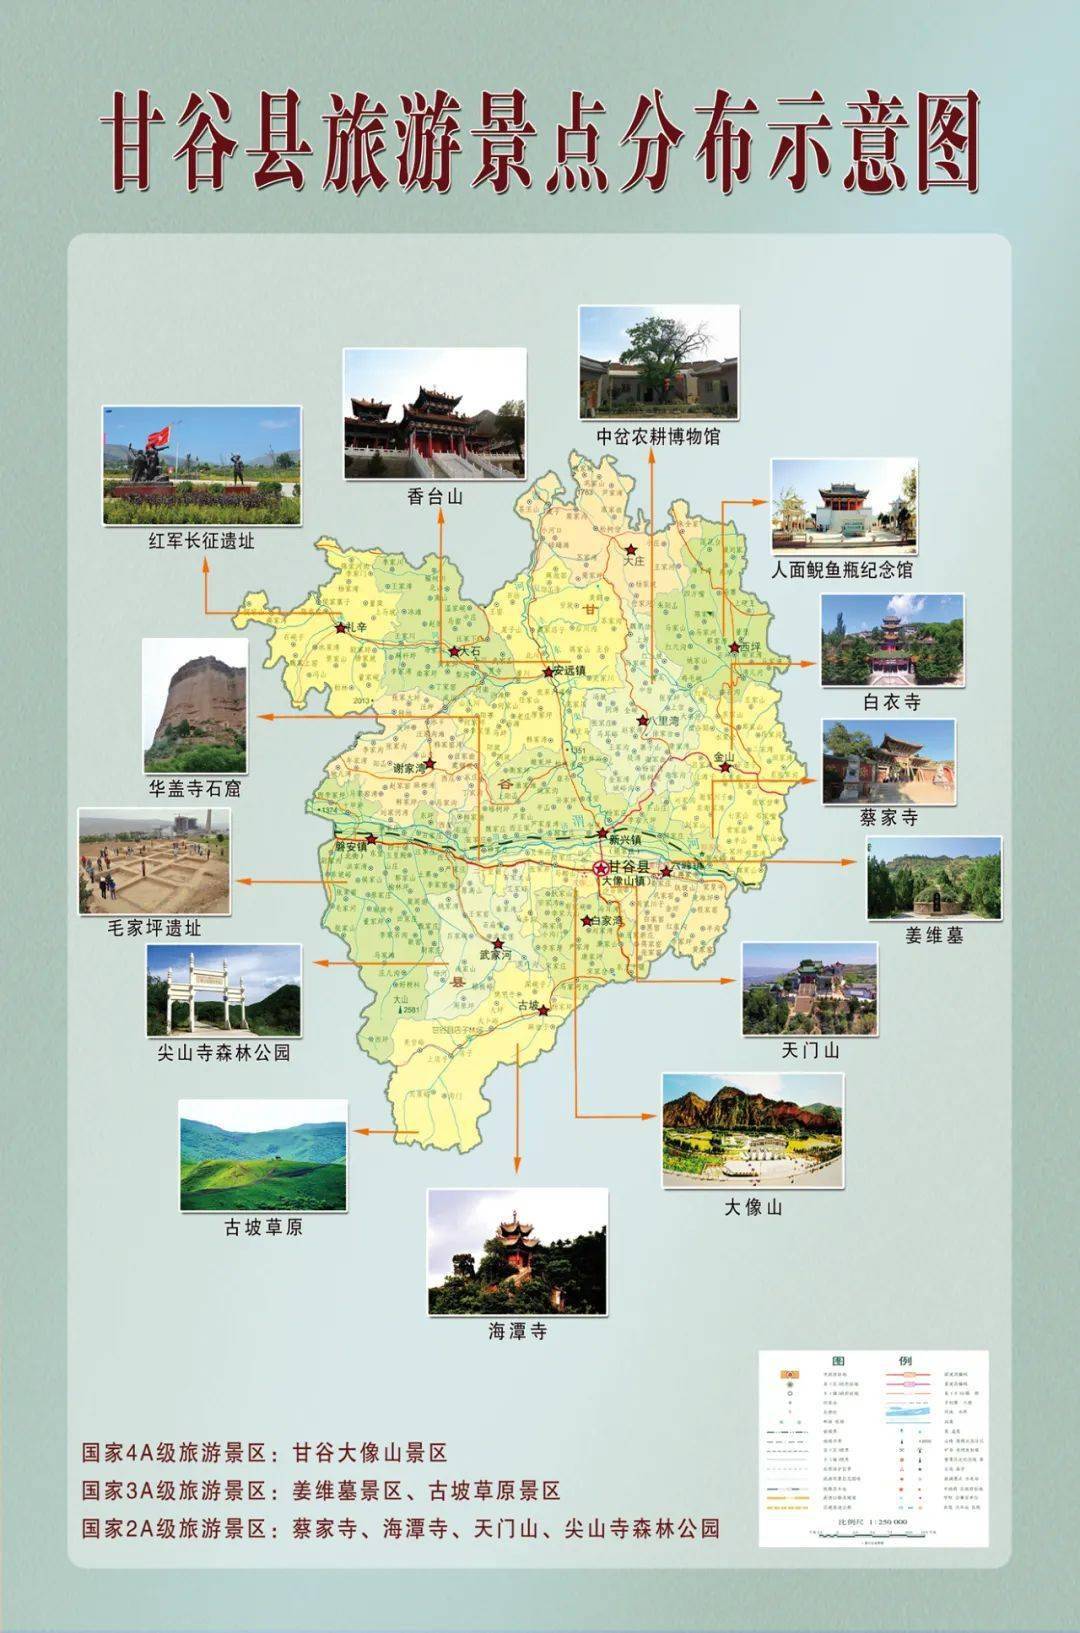 甘谷县新兴镇地图高清图片